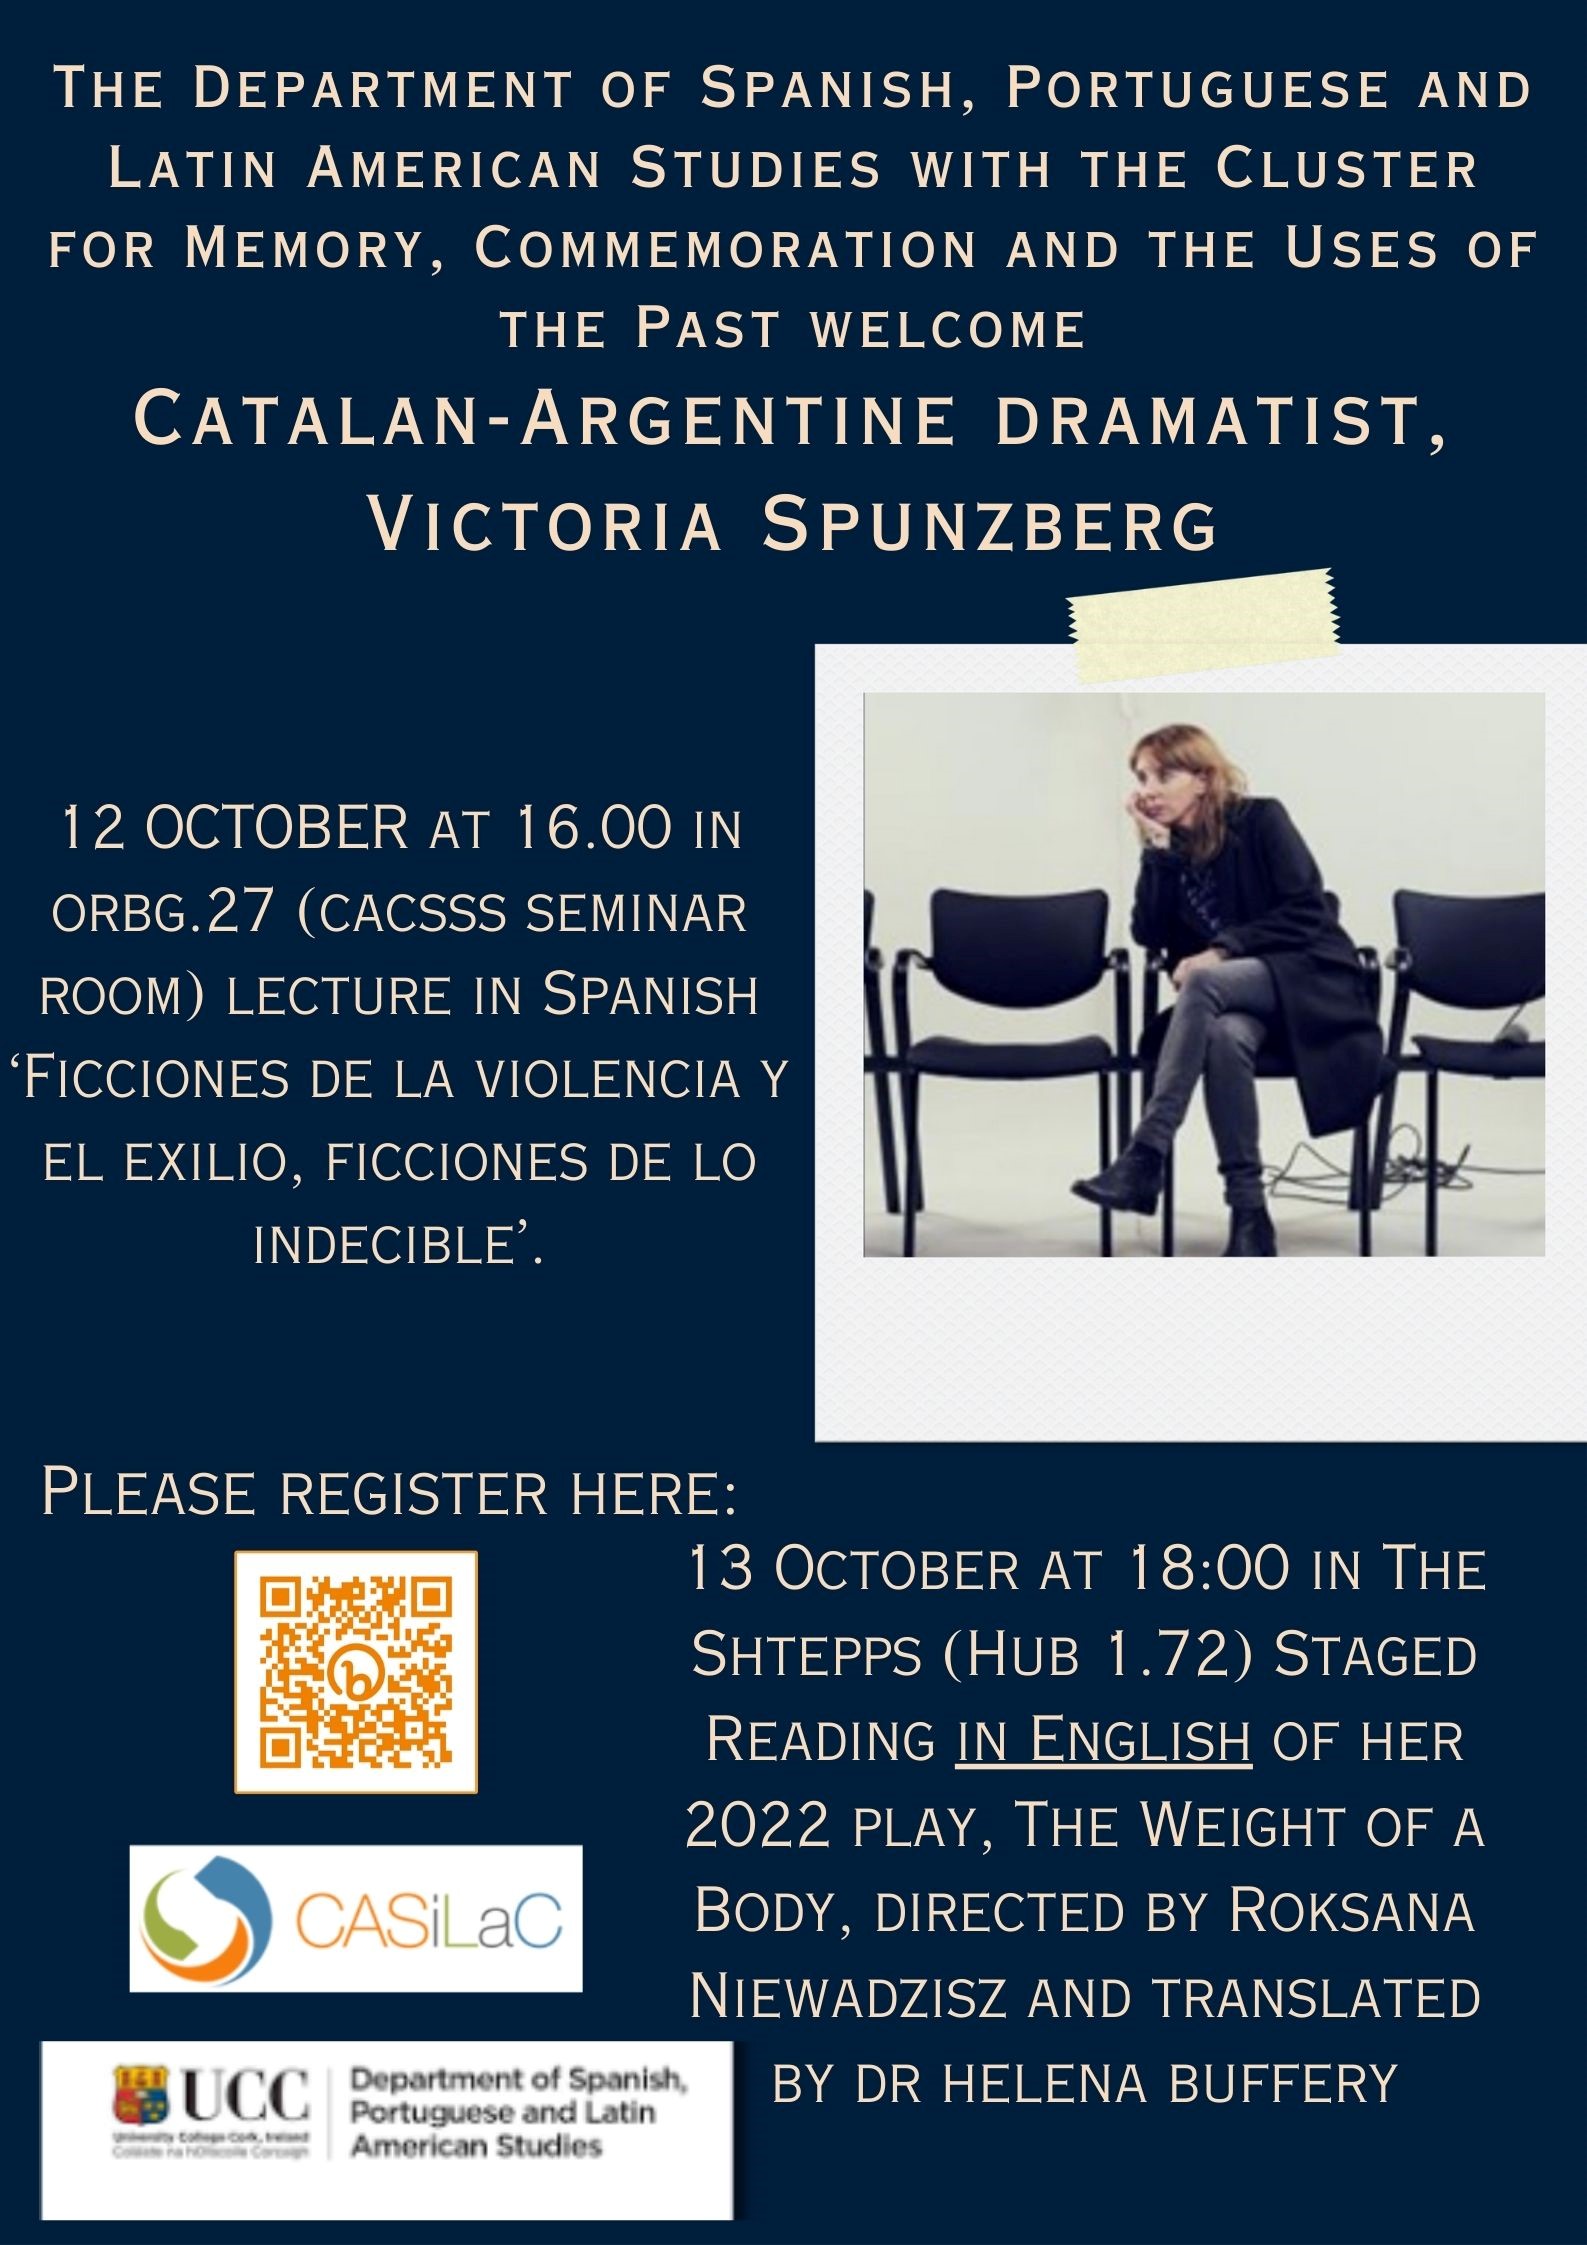 Welcoming Catalan-Argentine Dramatist, Victoria Spunzberg